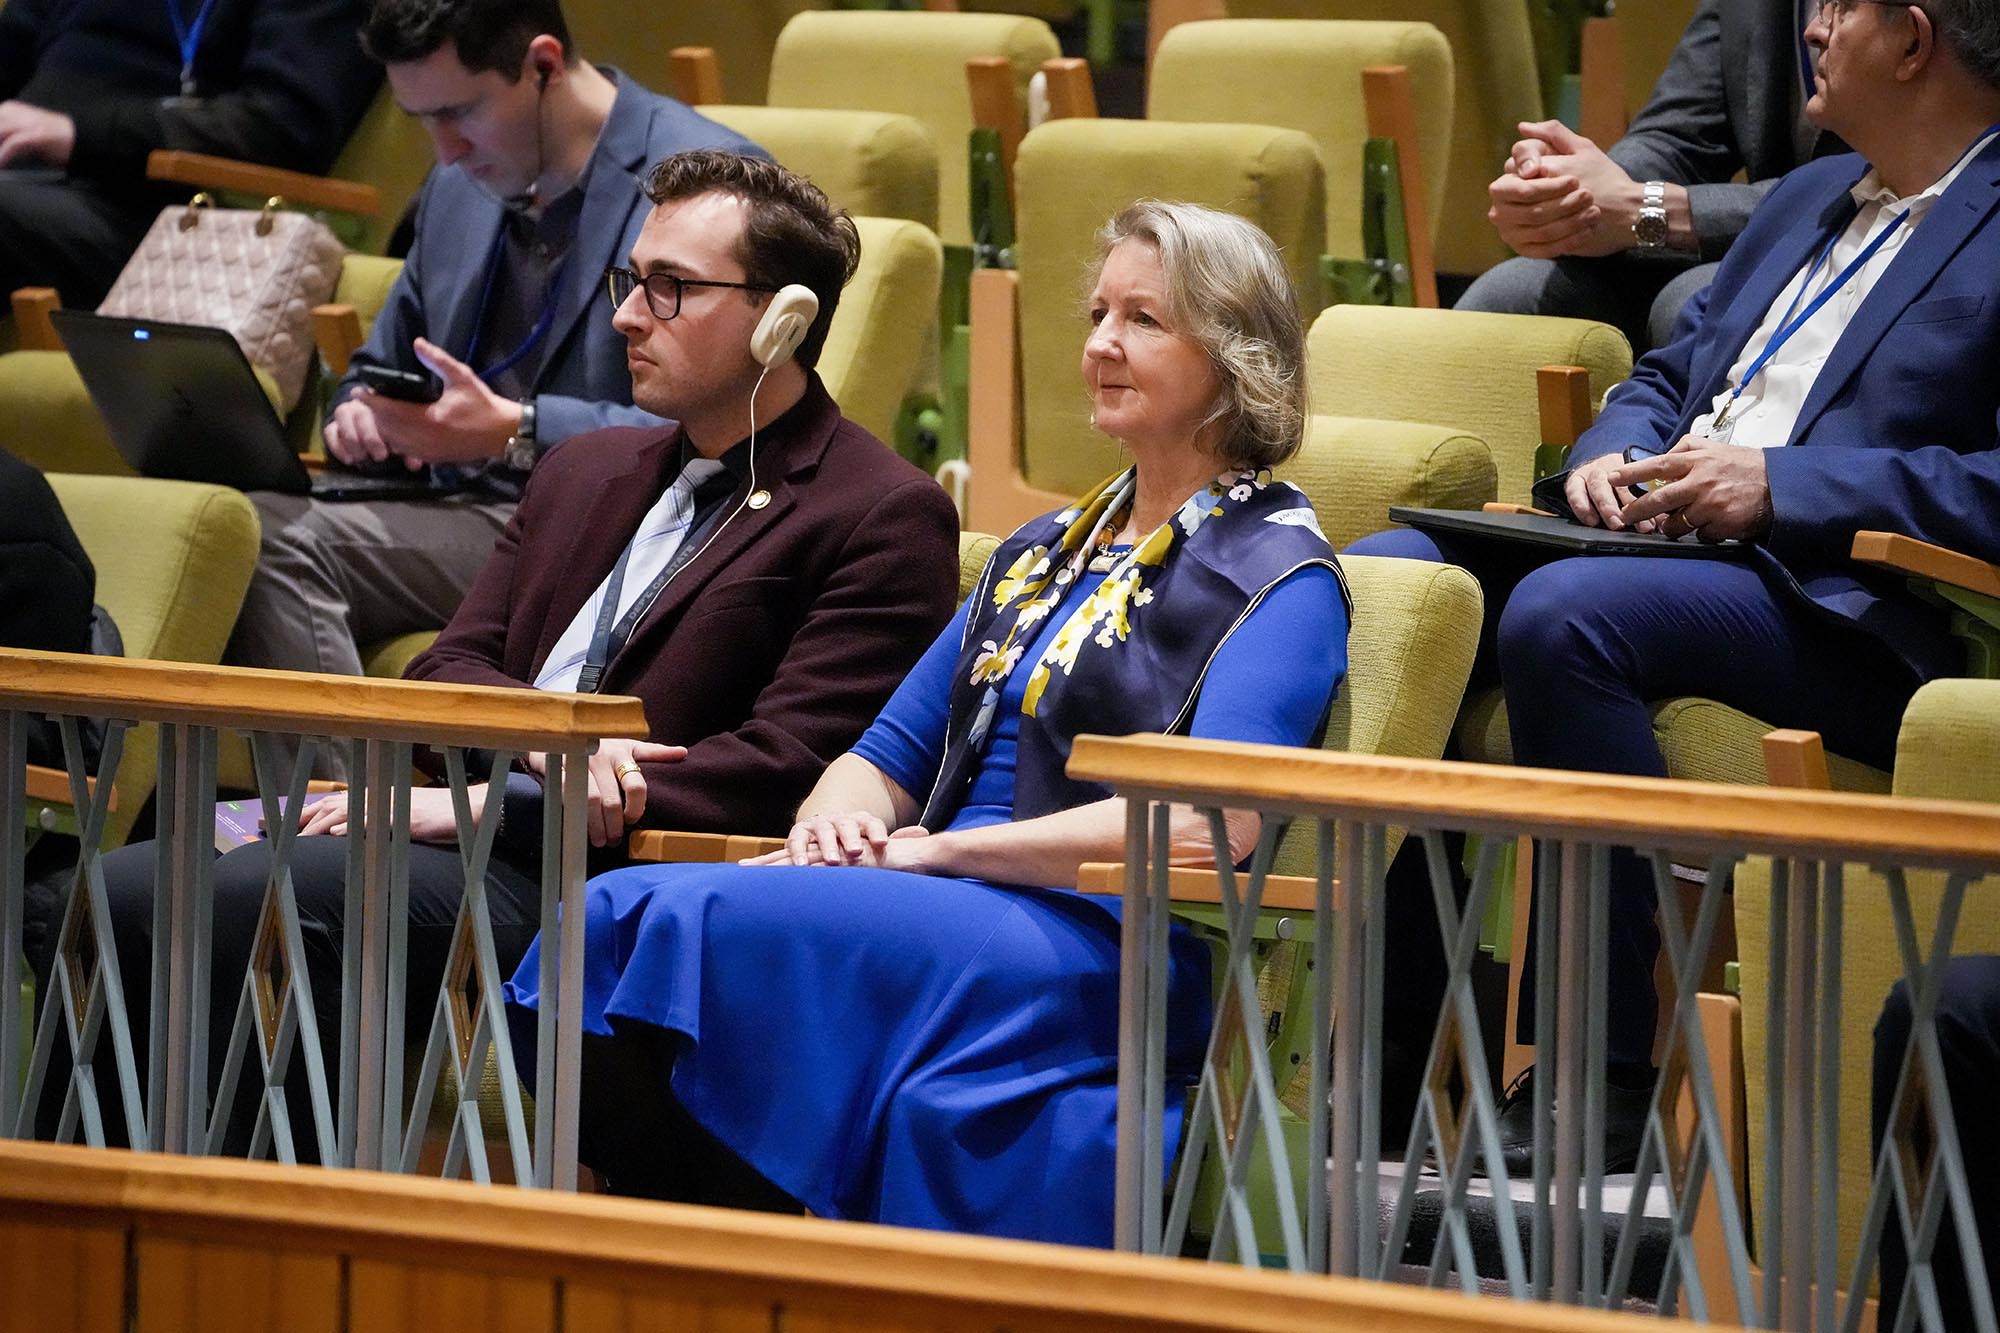 Elizabeth Whelan, hermana de Paul Whelan, se sienta en la tribuna durante una reunión del Consejo de Seguridad de la ONU mientras el Ministro de Relaciones Exteriores de Rusia, Sergey Lavrov, habla el 24 de abril de 2023 en la sede de las Naciones Unidas, Nueva York.  (Crédito: John Minchillo/AP) 